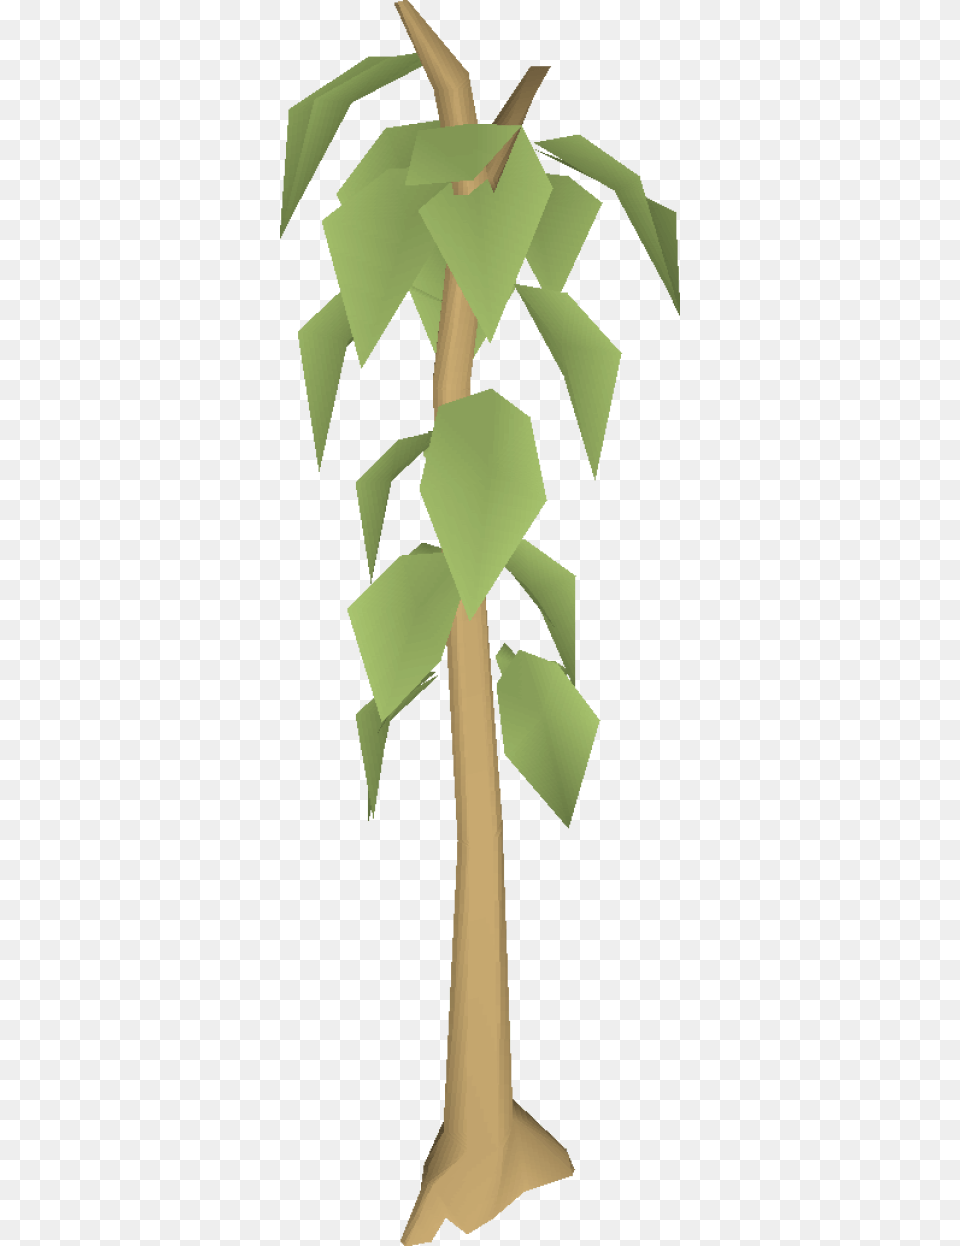 Teak Tree Clipart, Plant, Leaf, Green, Symbol Png Image